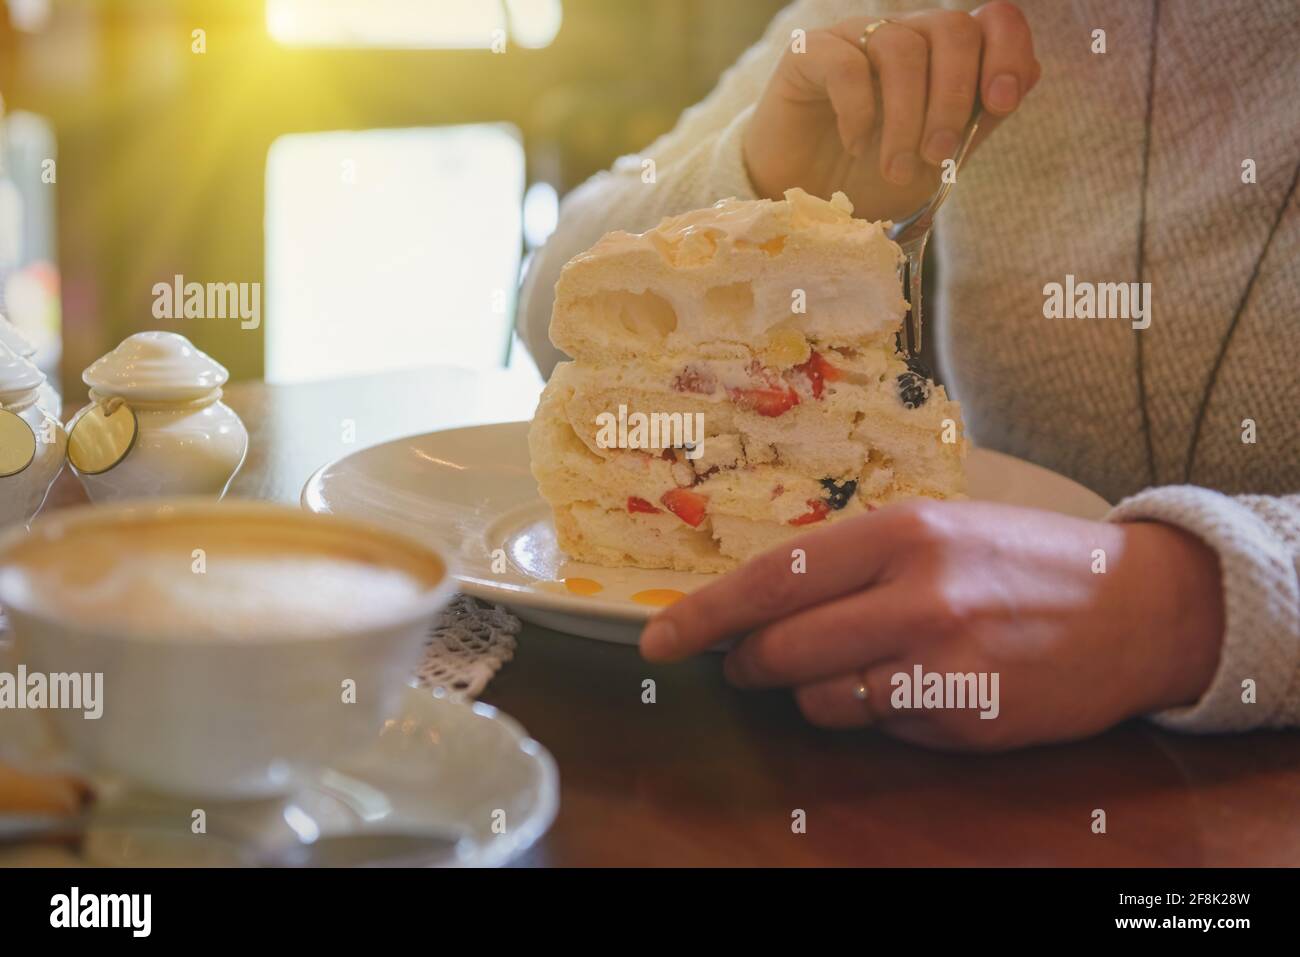 Image authentique d'une femme mangeant un gâteau meringue, une tasse de cappuccino en arrière-plan Banque D'Images